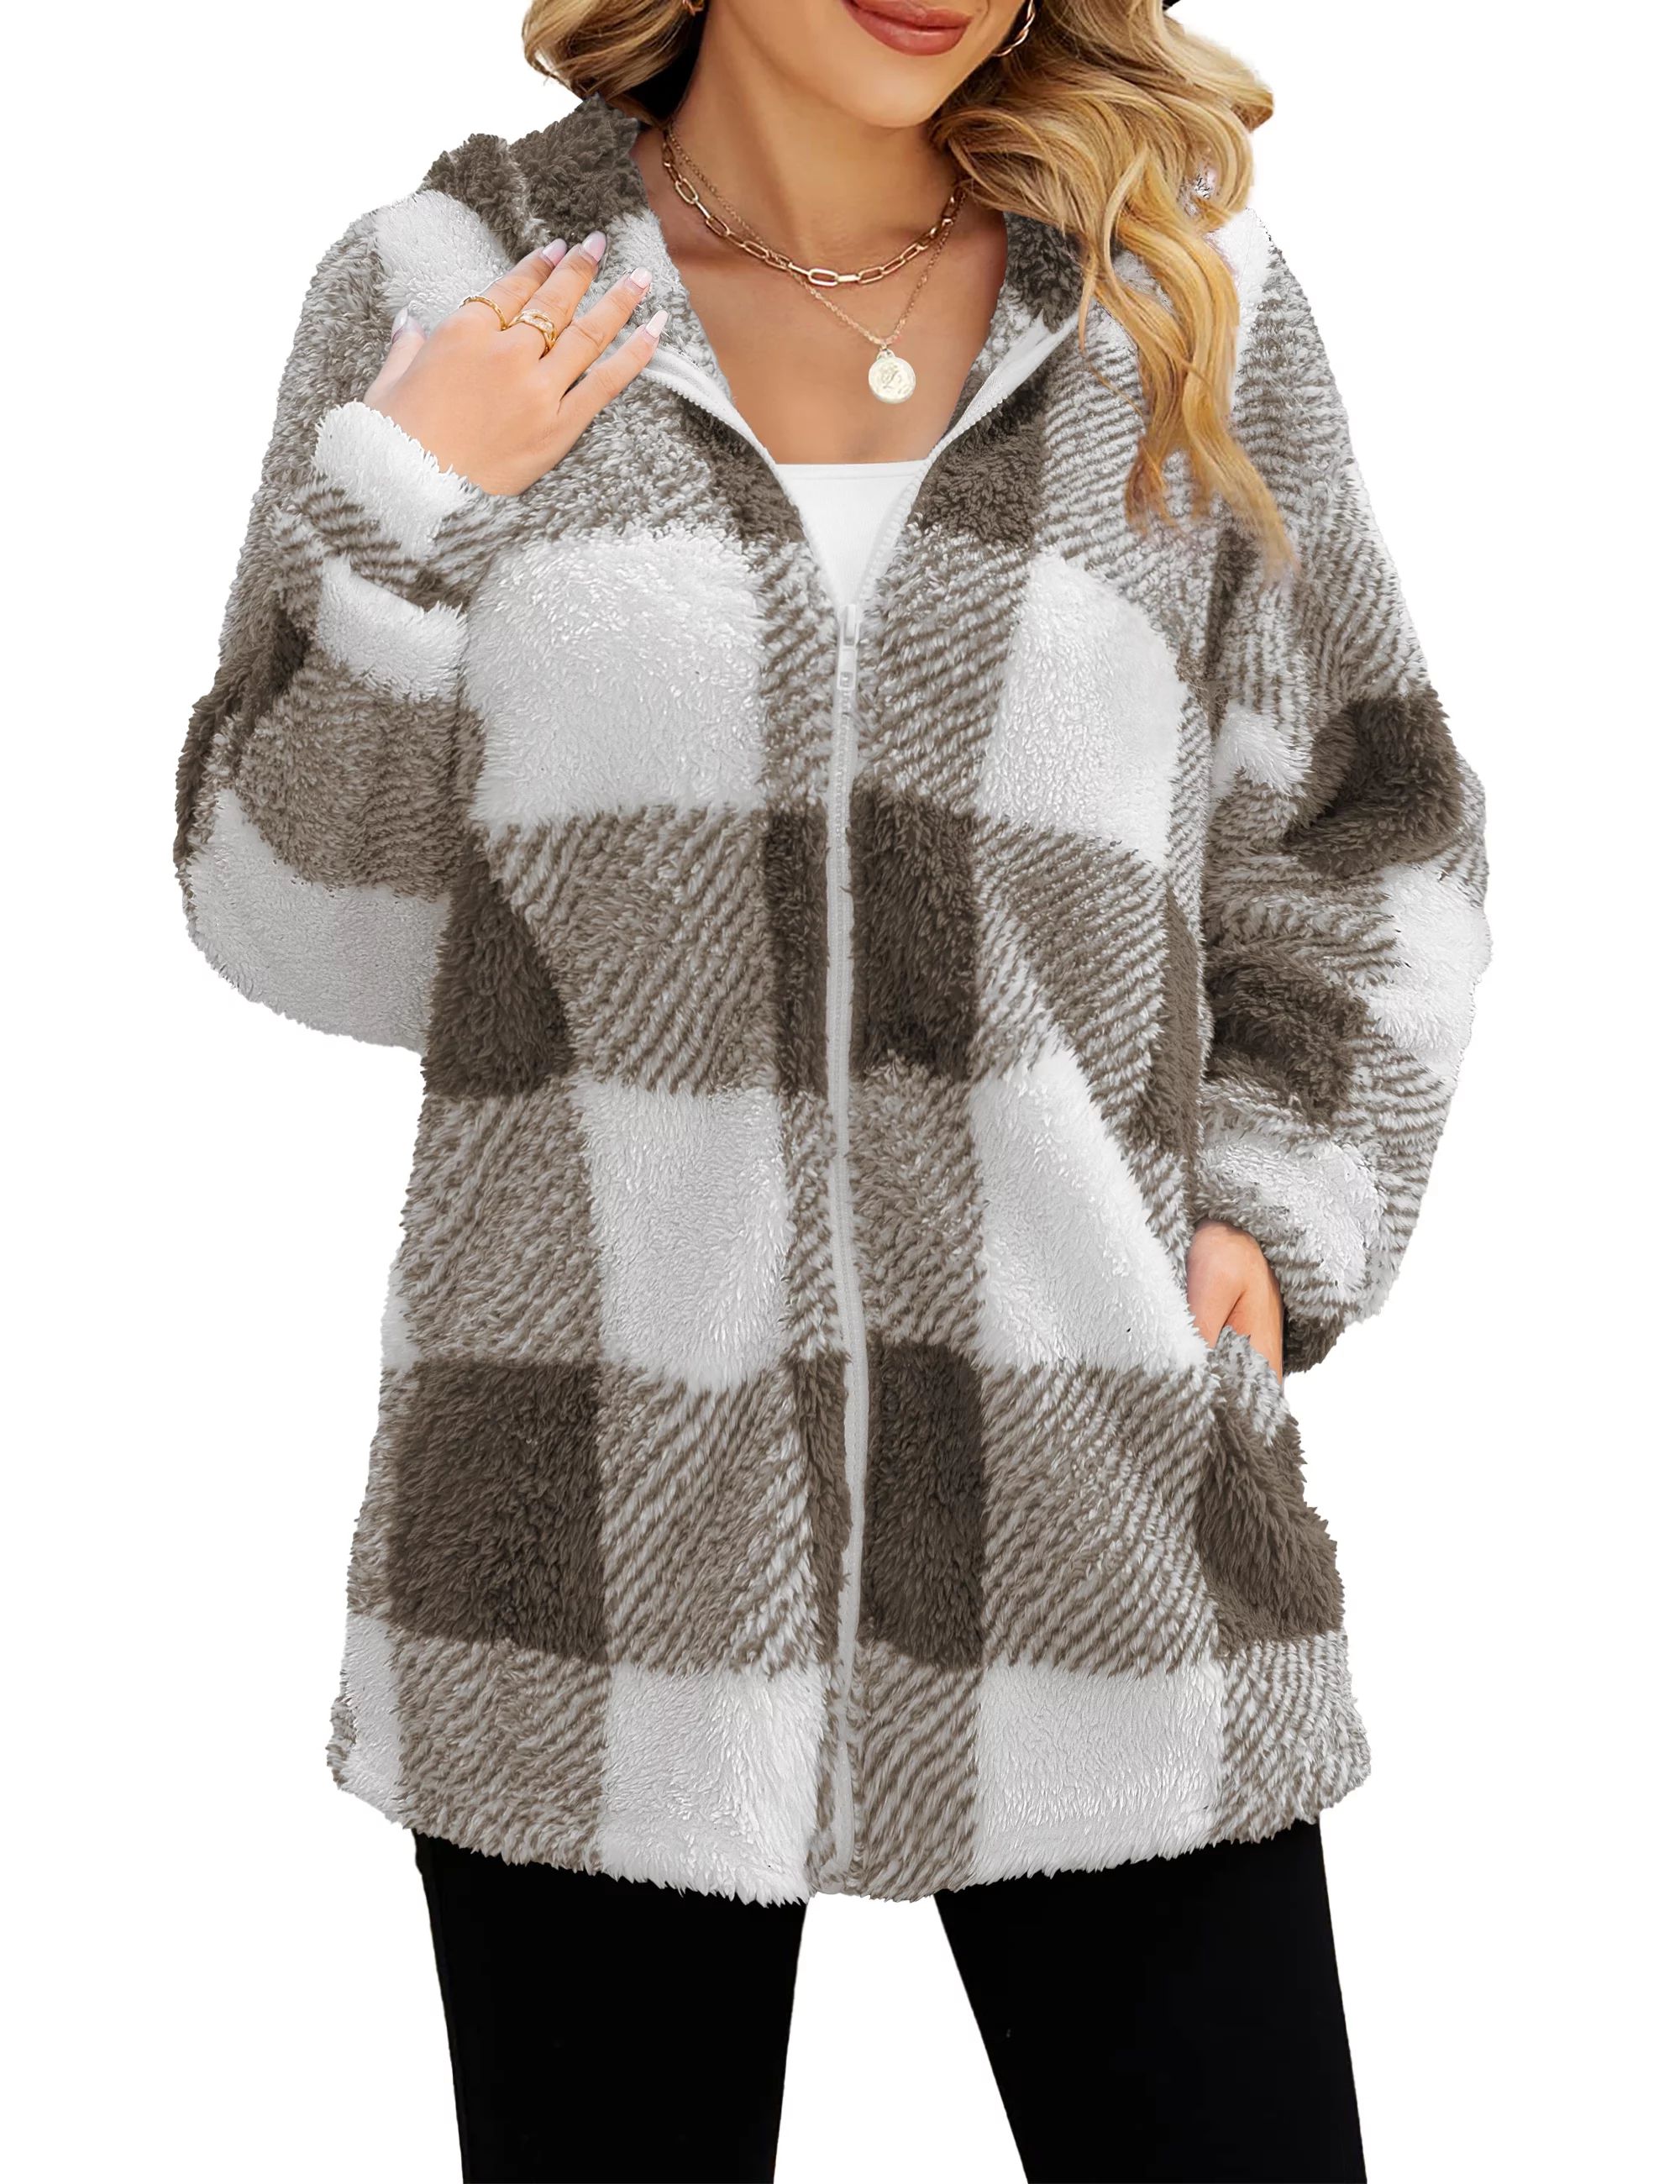 a.Jesdani Women's Full Zip Fleece Jacket Long Sleeve Buffalo Plaid Warm Hooded Coats Outerwear wi... | Walmart (US)